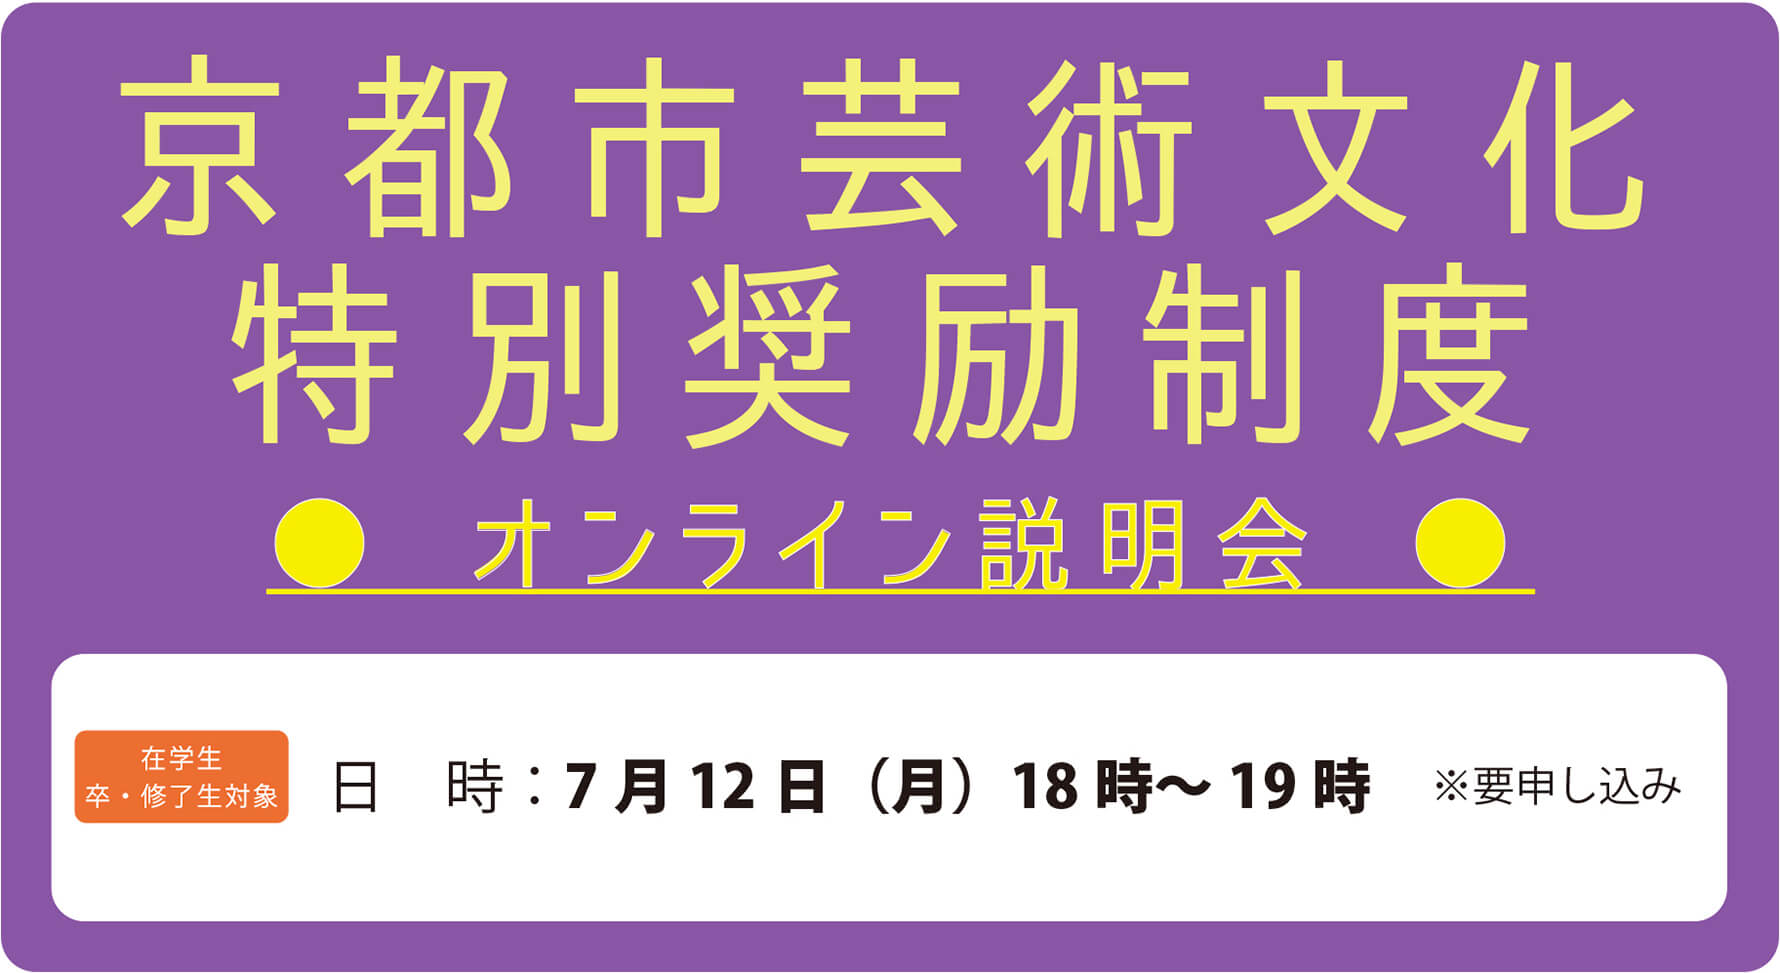 「京都市芸術文化特別奨励制度」オンライン説明会のお知らせ